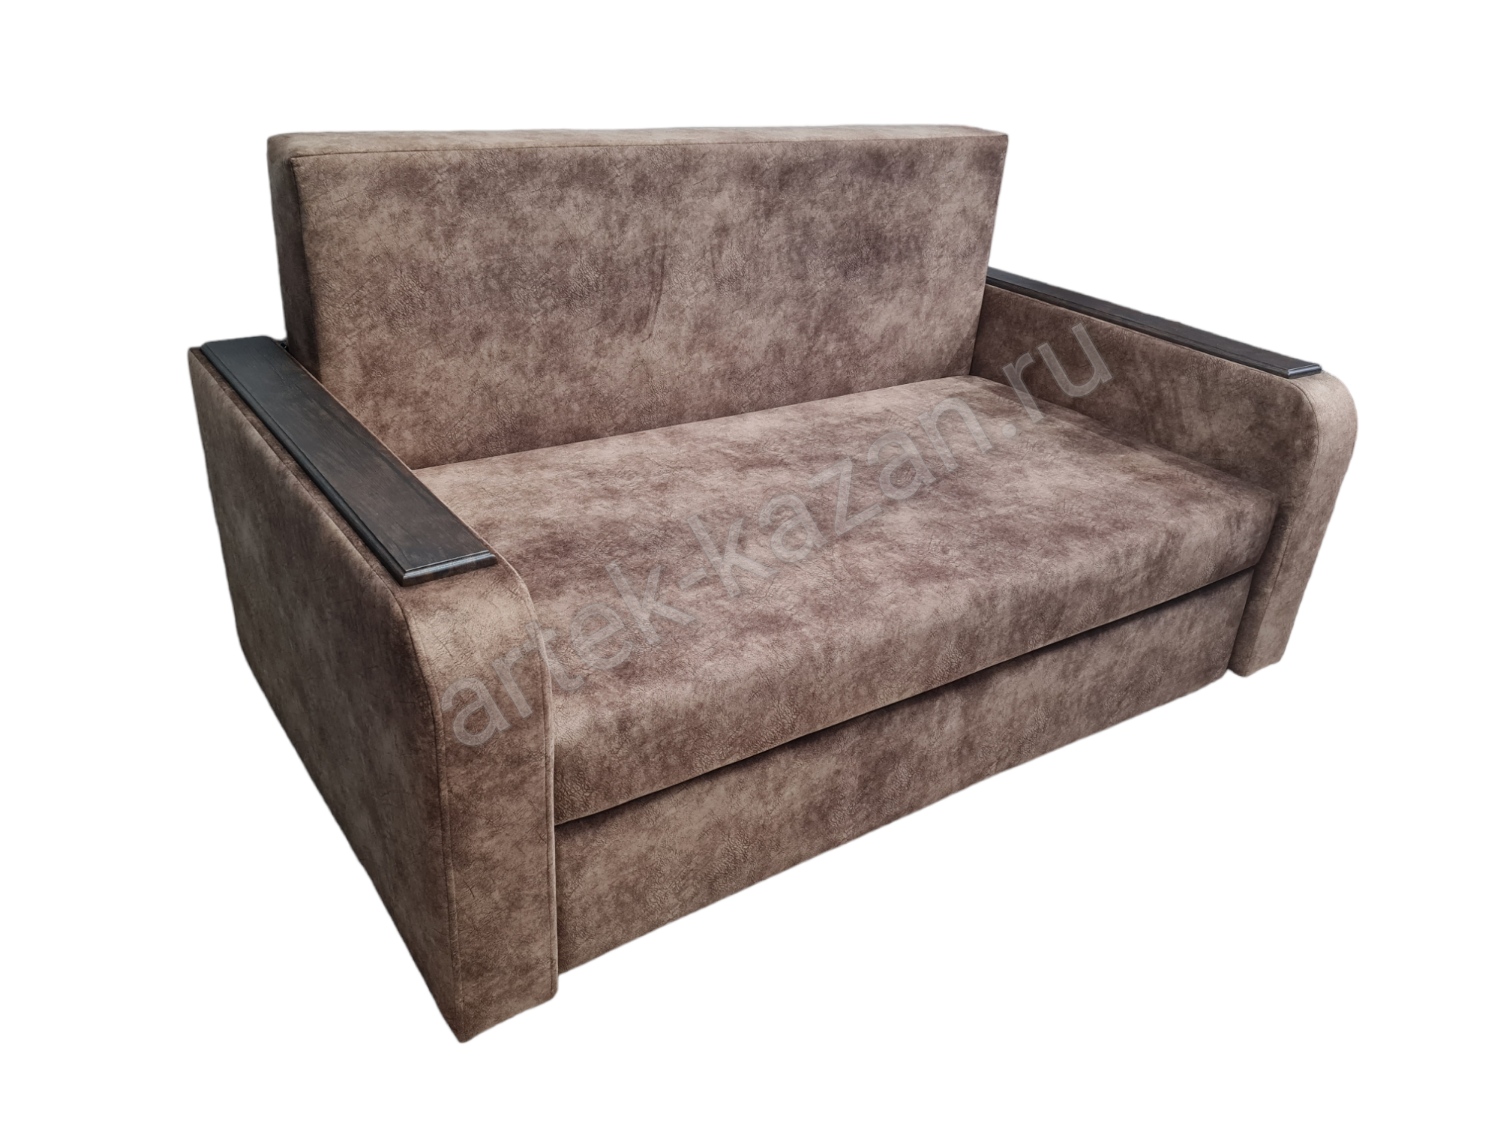 Фото 3. Купить недорогой диван по низкой цене от производителя можно у нас.